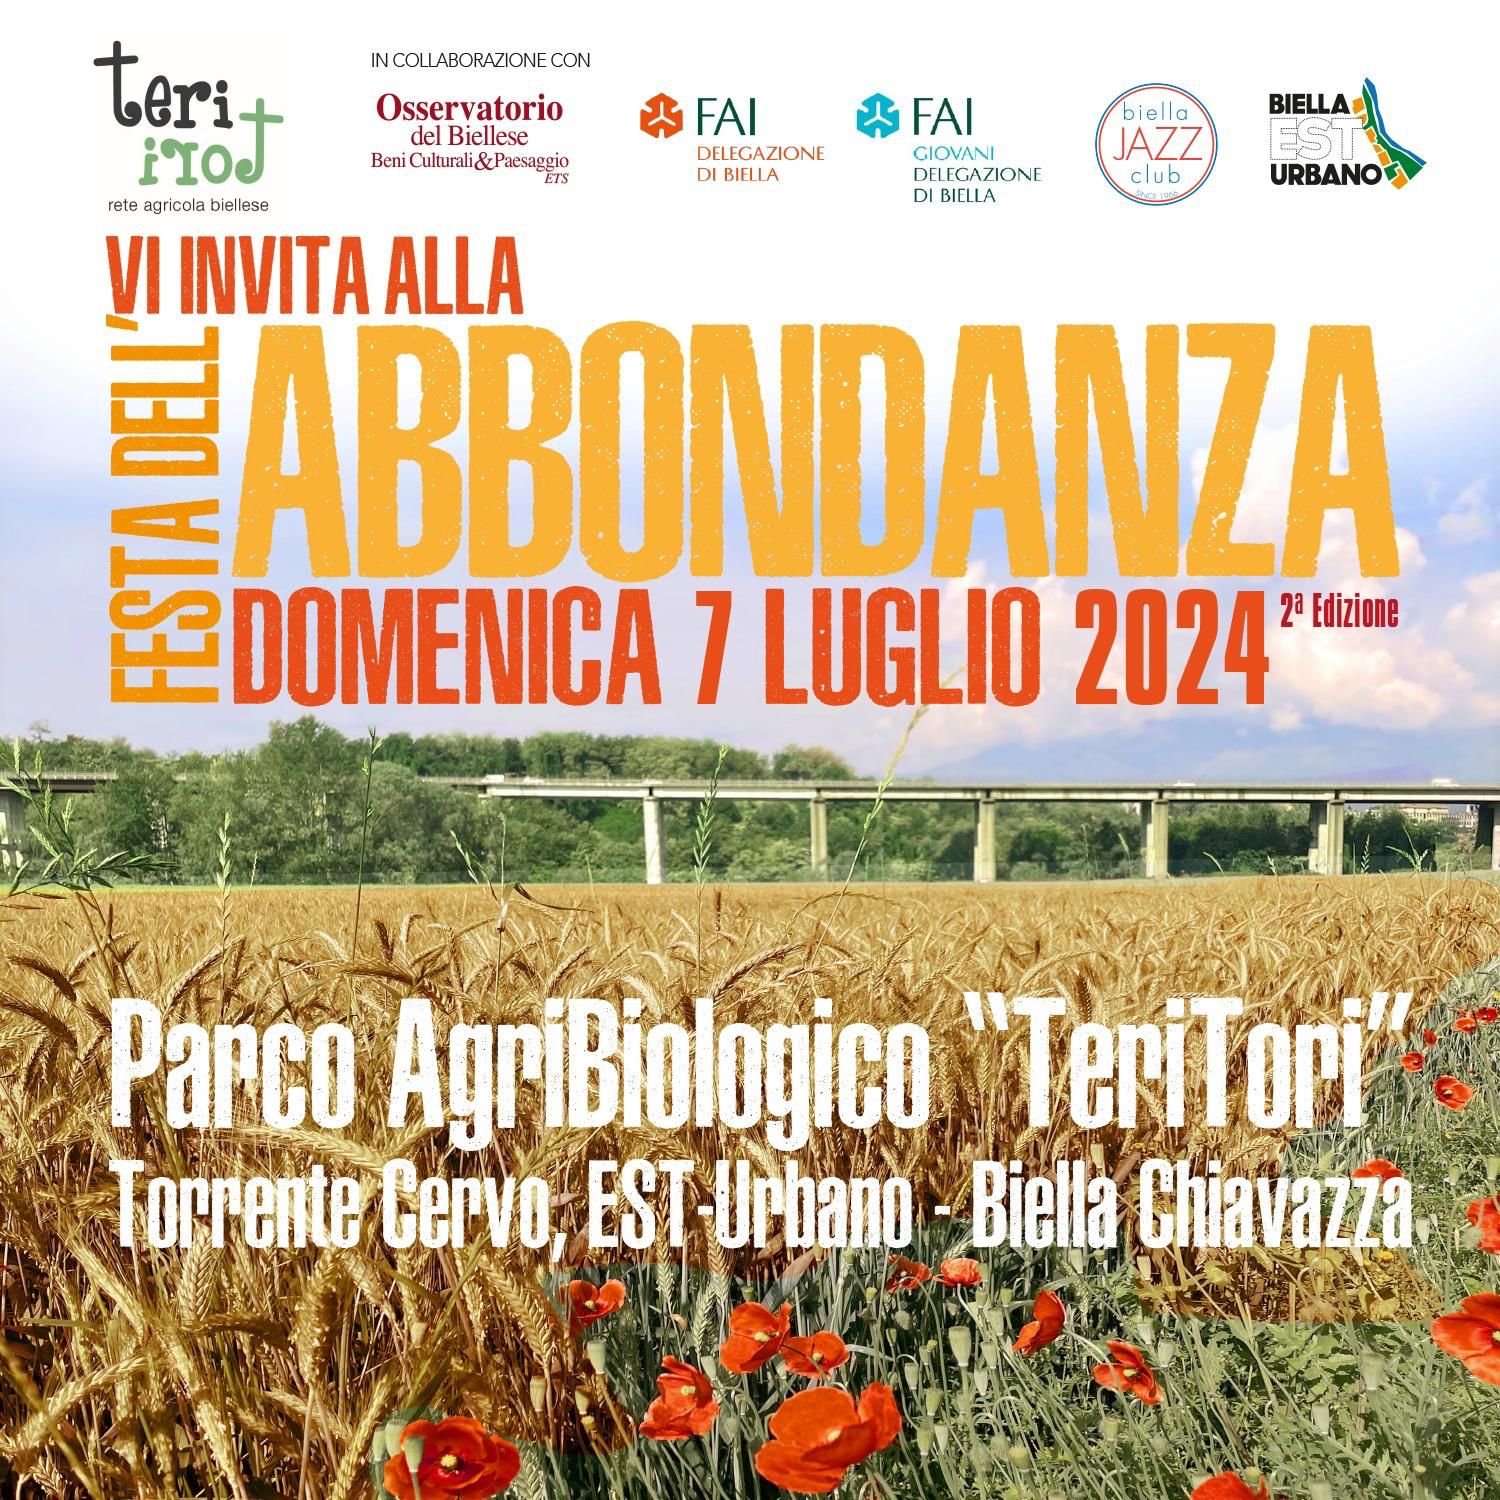 Parco AgriBiologico TeriTori
Domenica 7 luglio 2024